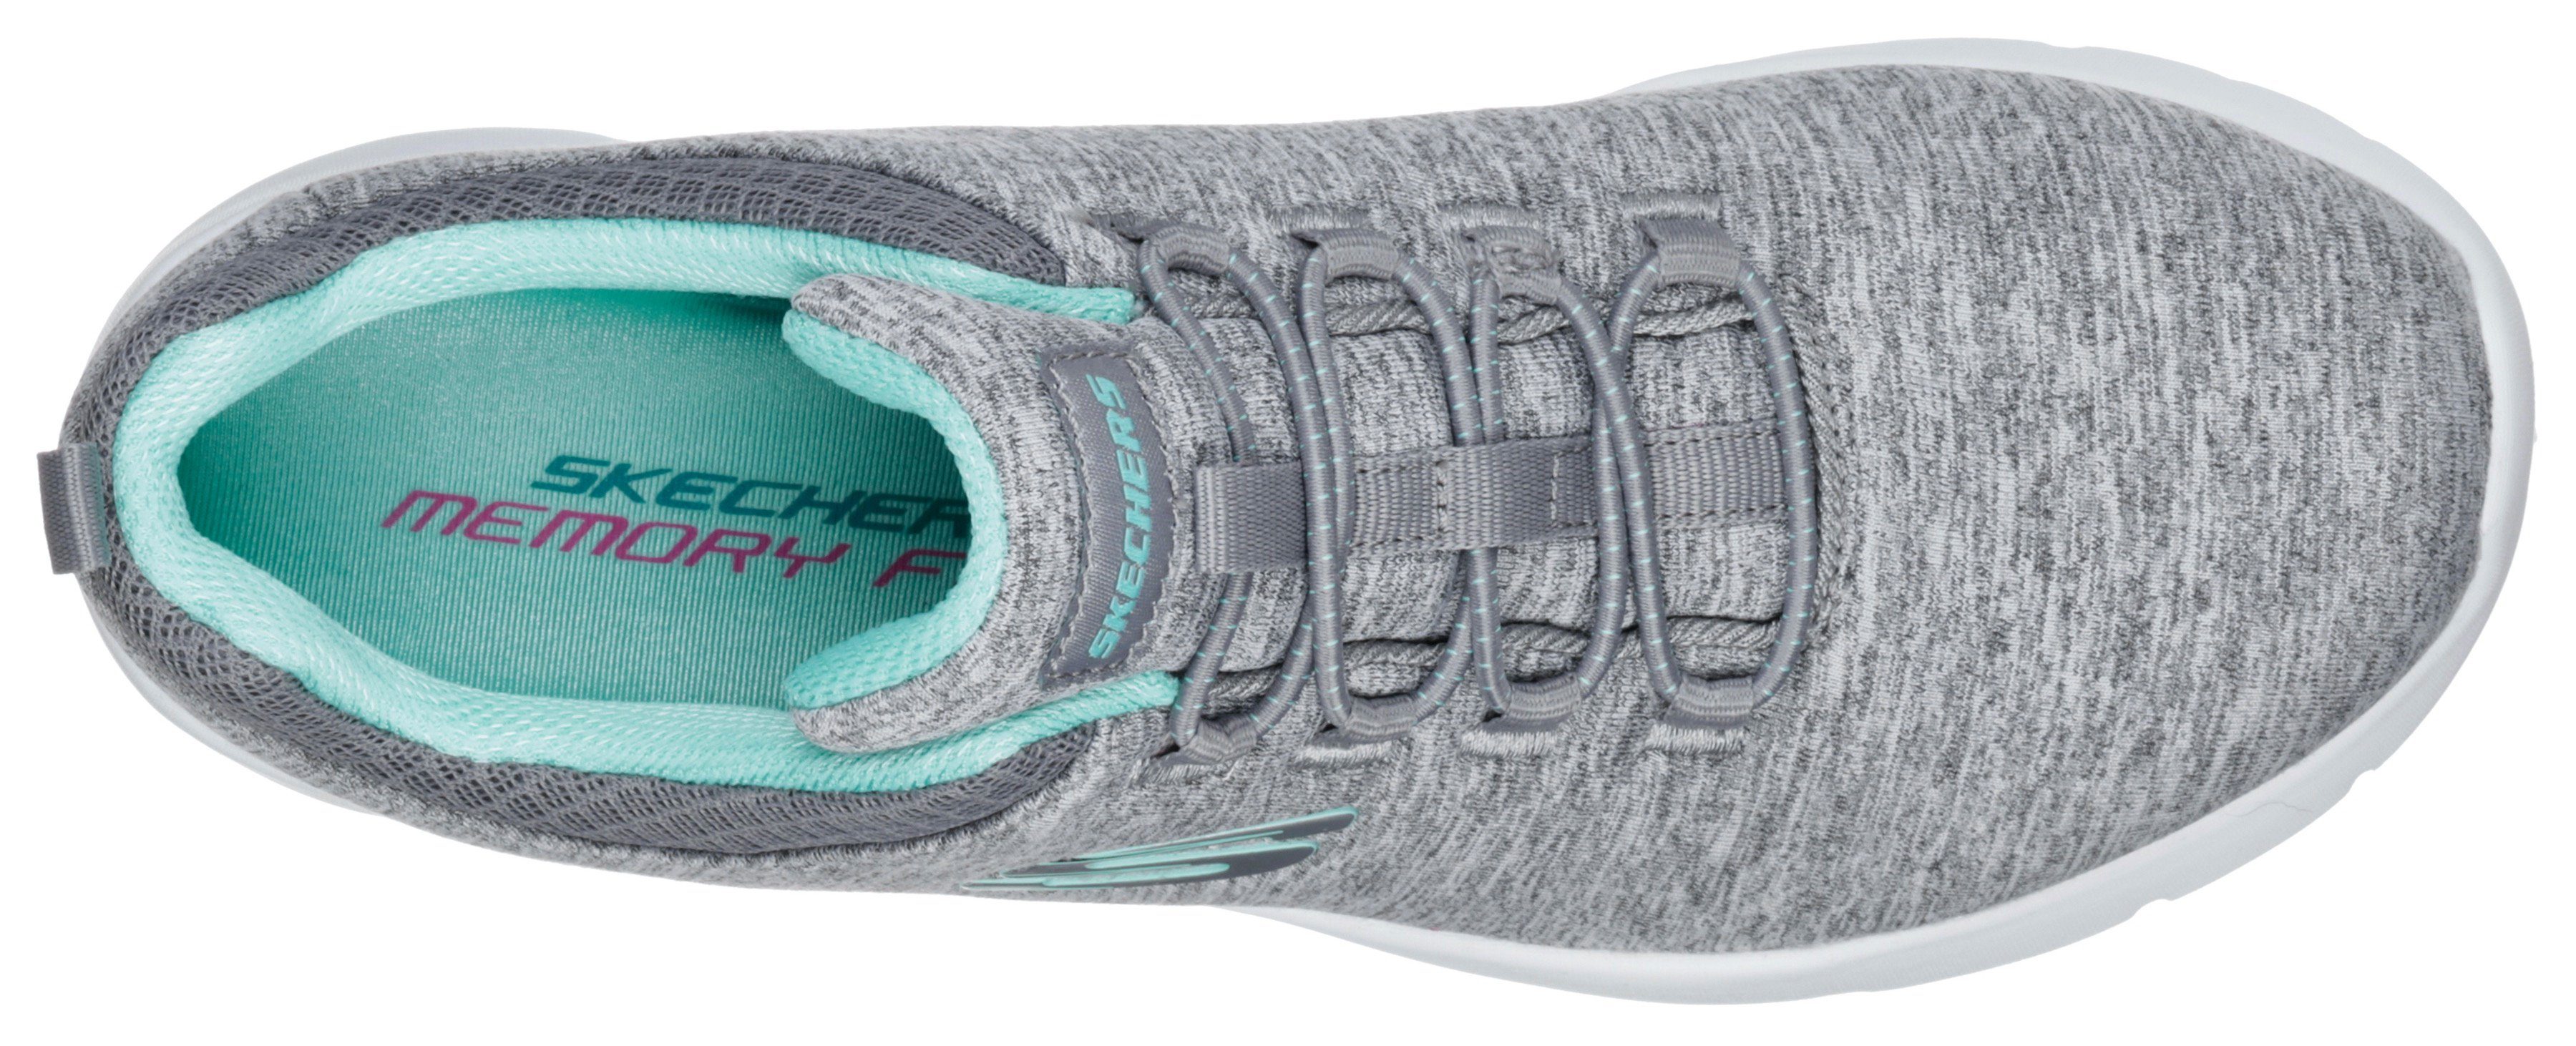 2.0-IN für A grau-mint FLASH Slip-On Skechers DYNAMIGHT Maschinenwäsche geeignet Sneaker